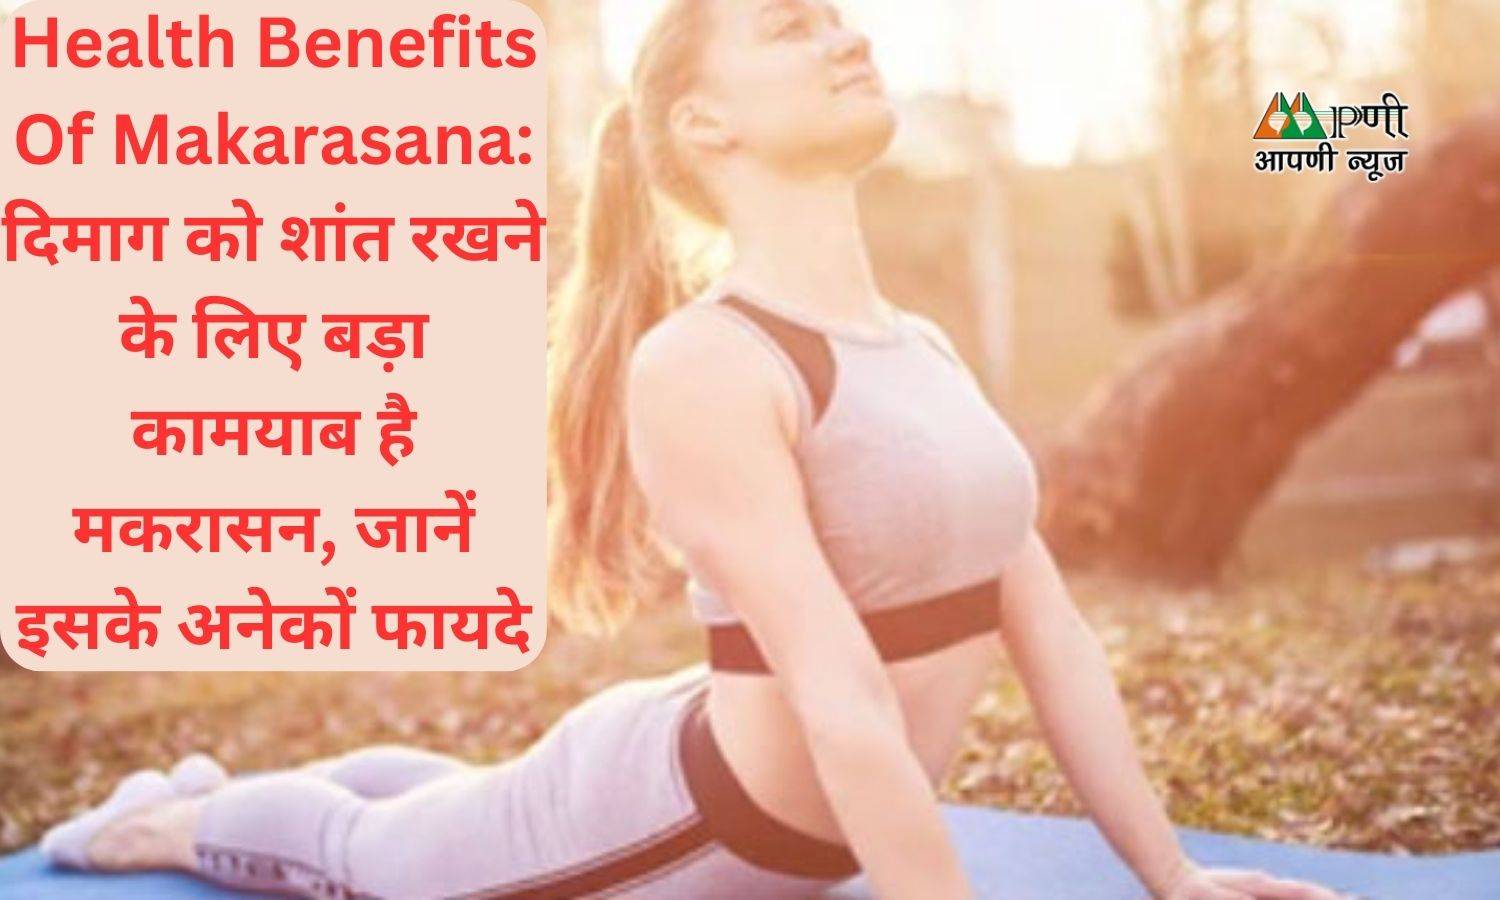 Health Benefits Of Makarasana: दिमाग को शांत रखने के लिए बड़ा कामयाब है मकरासन, जानें इसके अनेकों फायदे